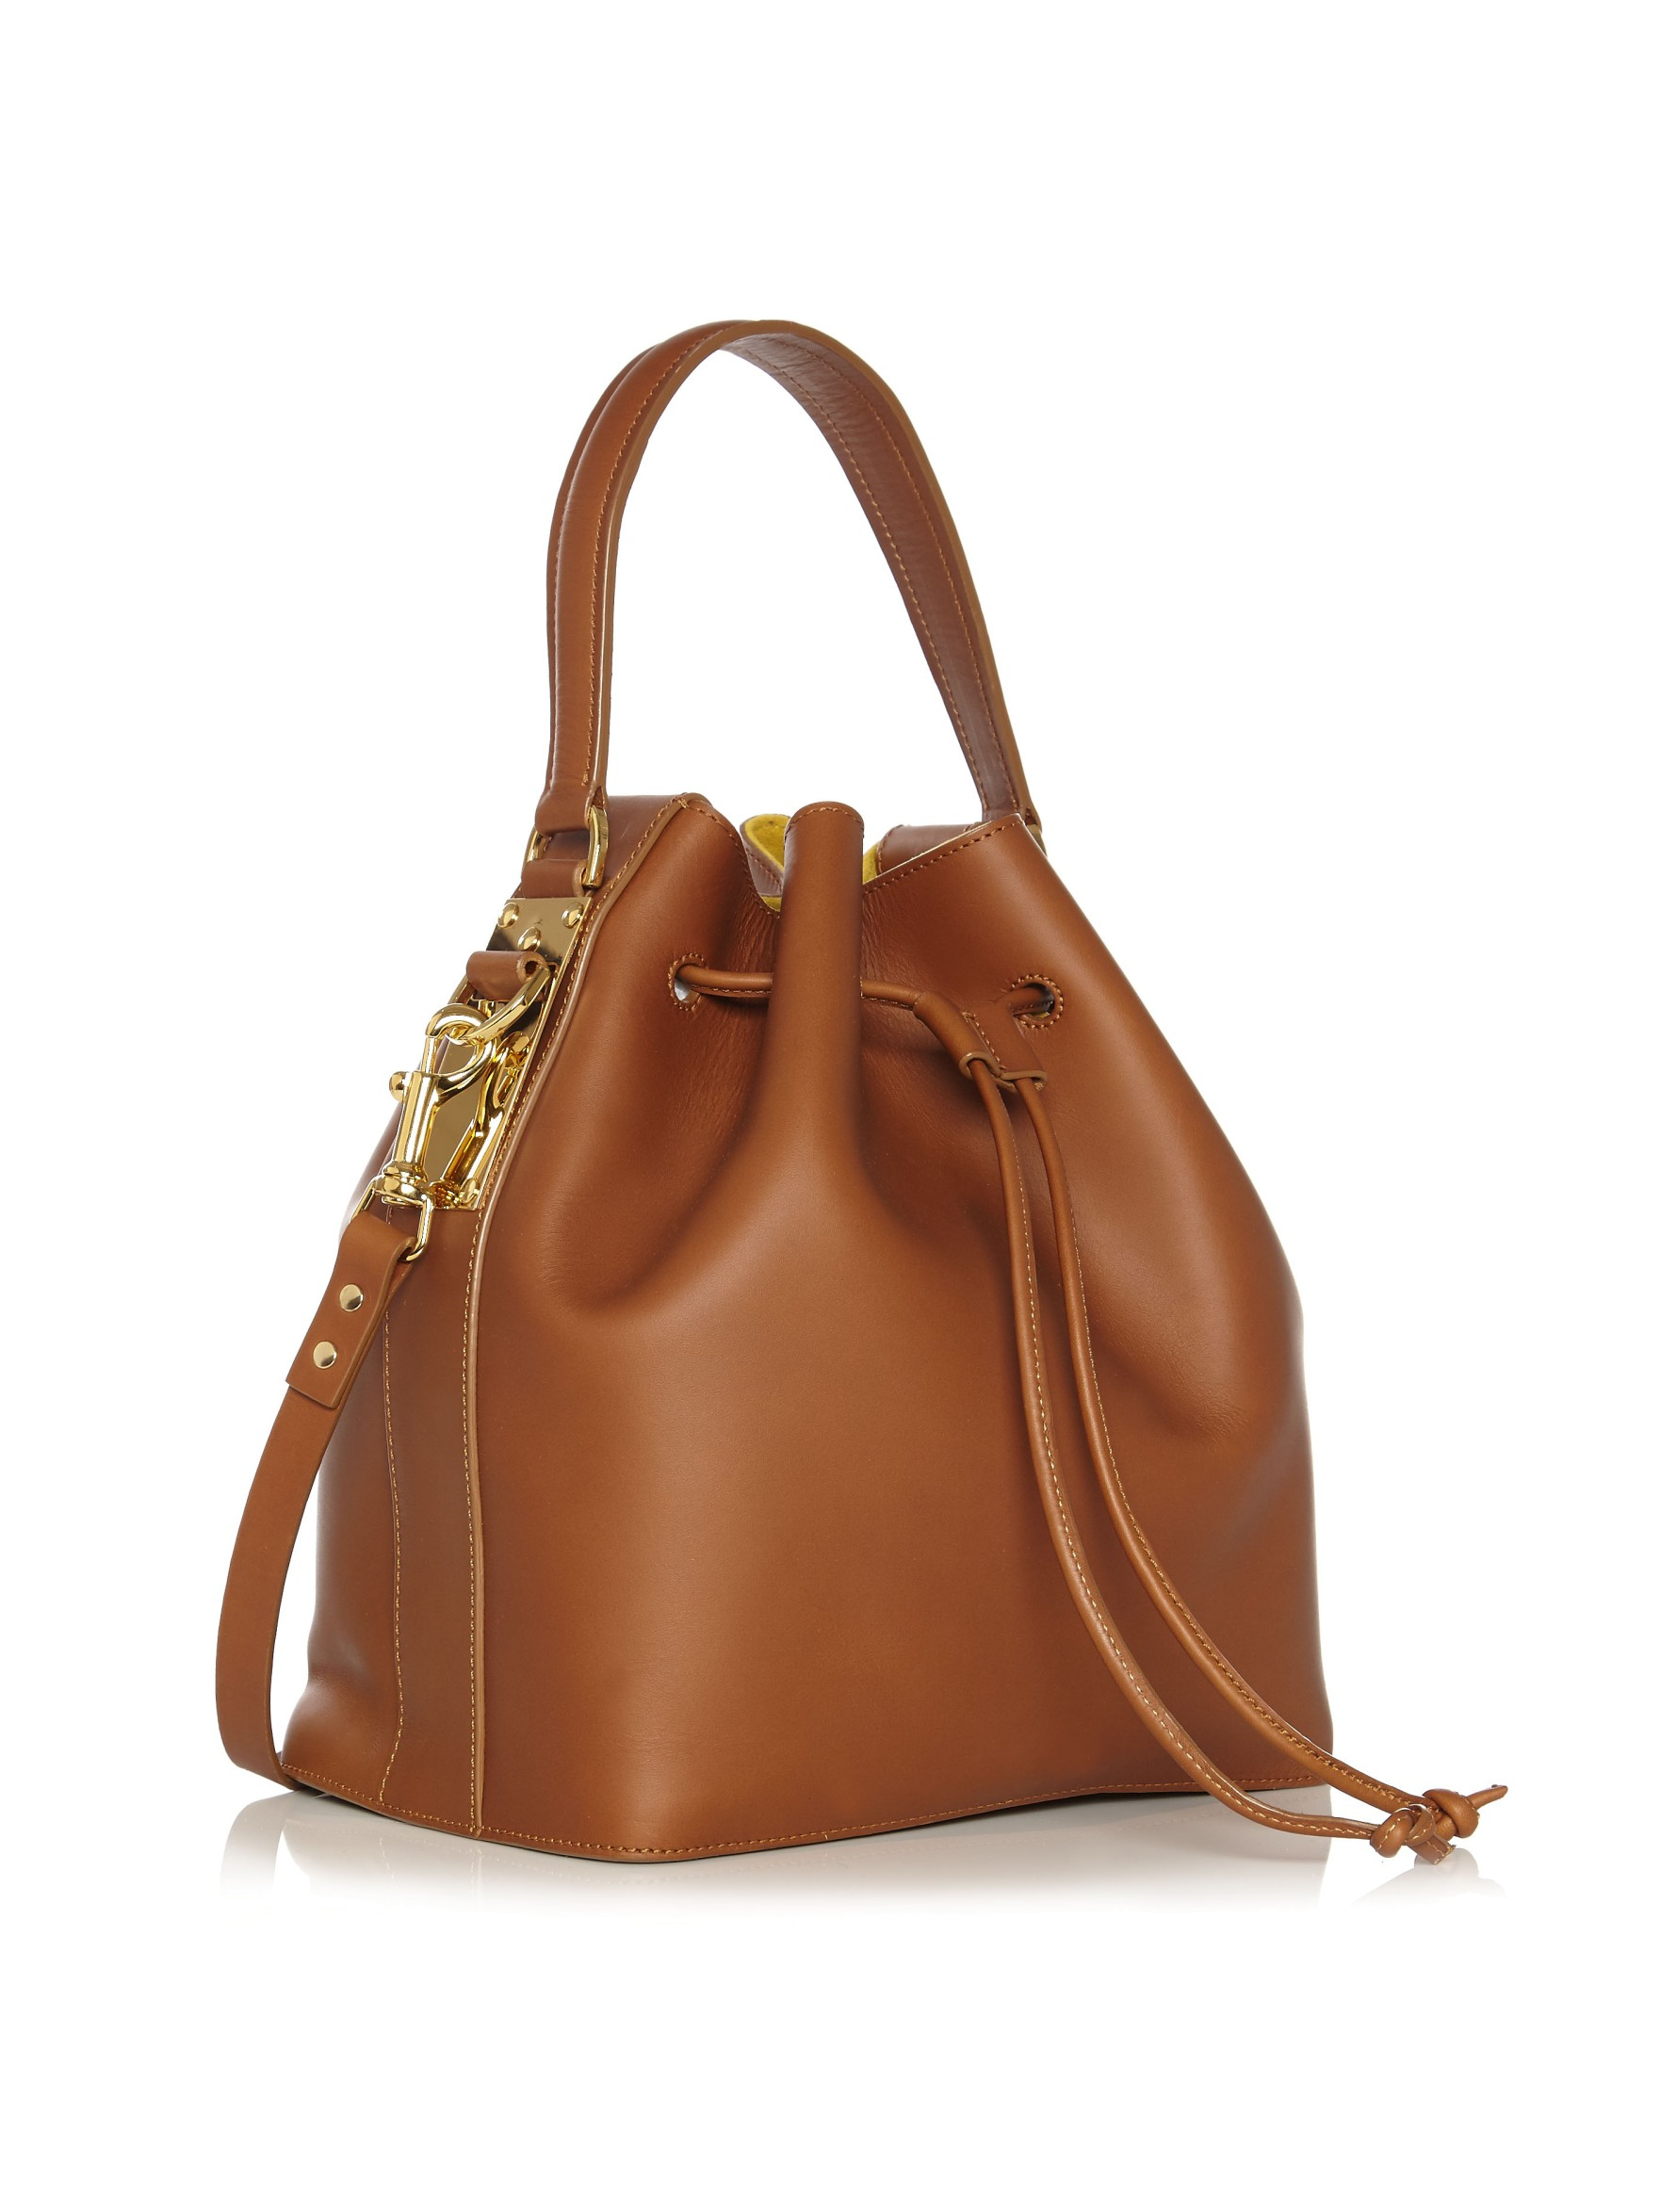 Sophie hulme Large Bucket Bag in Brown | Lyst